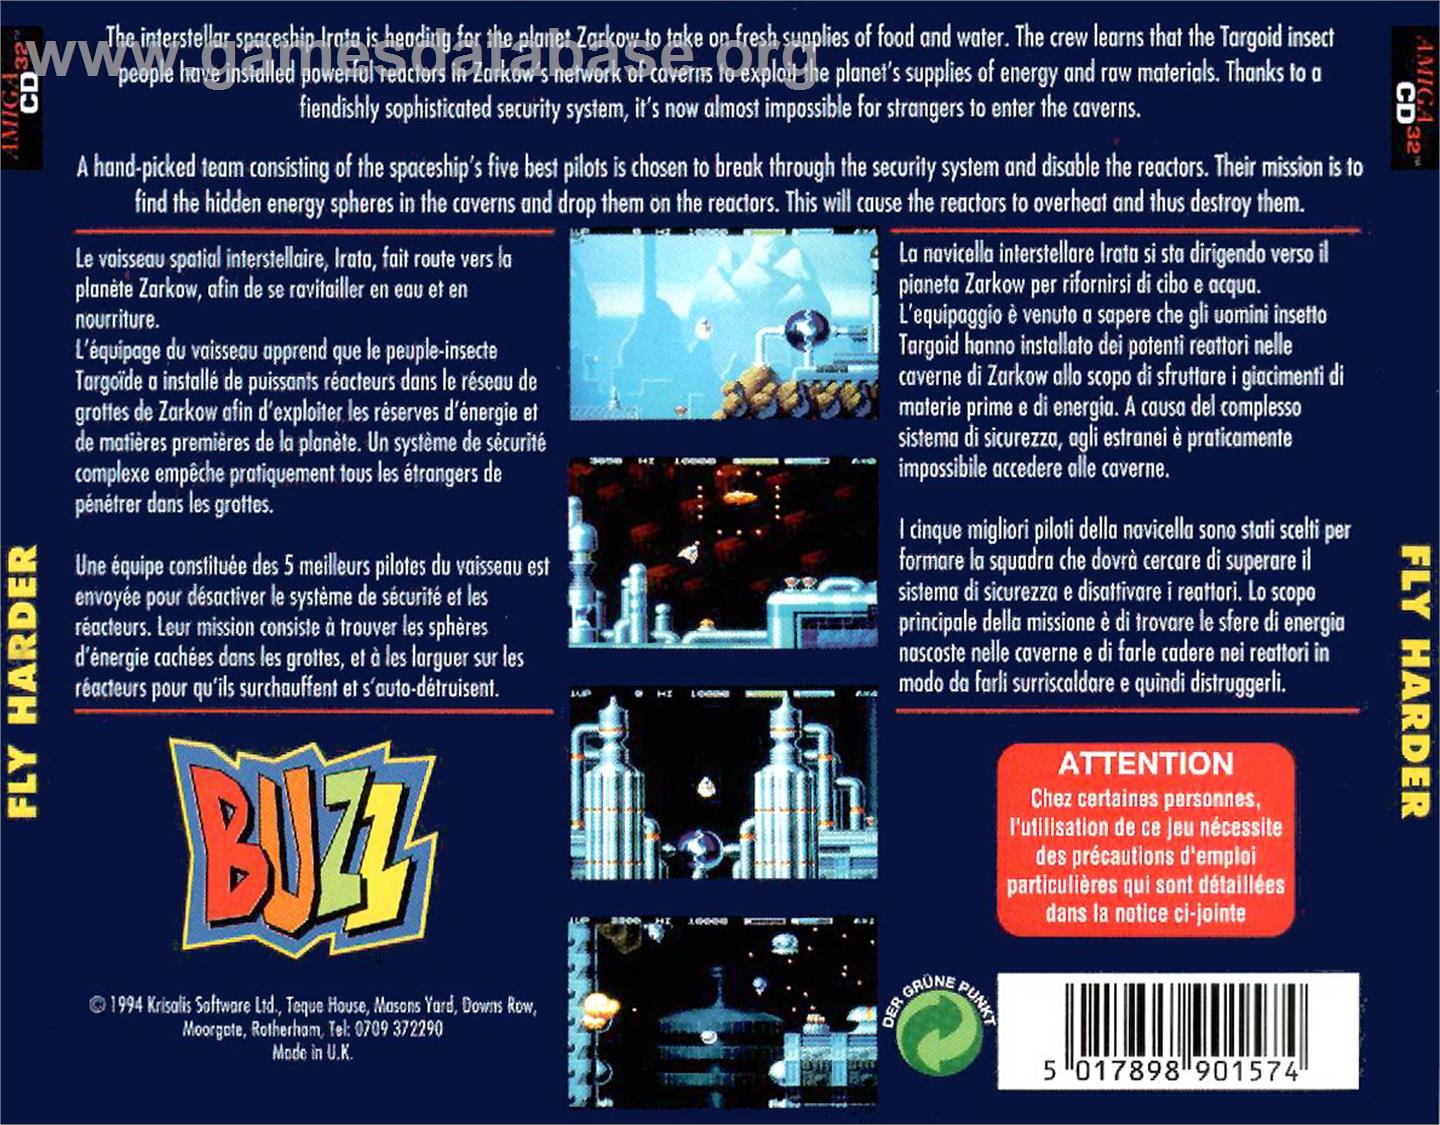 Fly Harder - Commodore Amiga CD32 - Artwork - Box Back